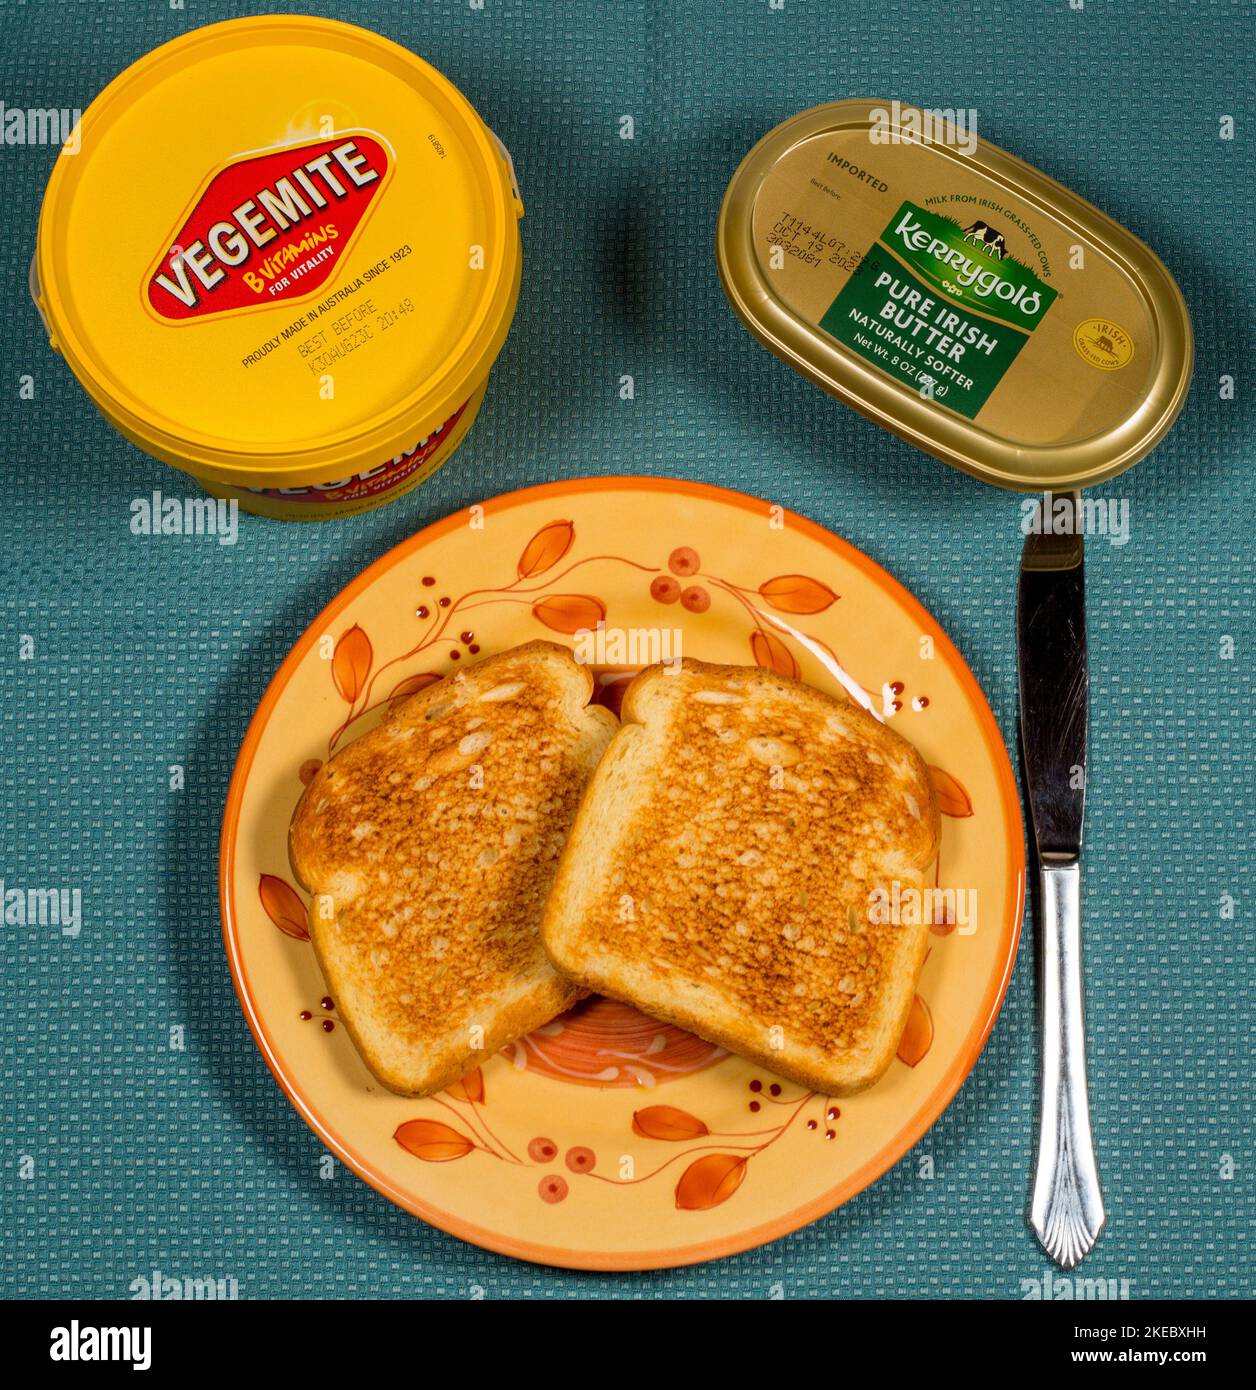 Frühstück von Champions, australischer Vegemite auf Toast mit Kerrygold, reiner irischer Grassbutter! Lecker! Stockfoto